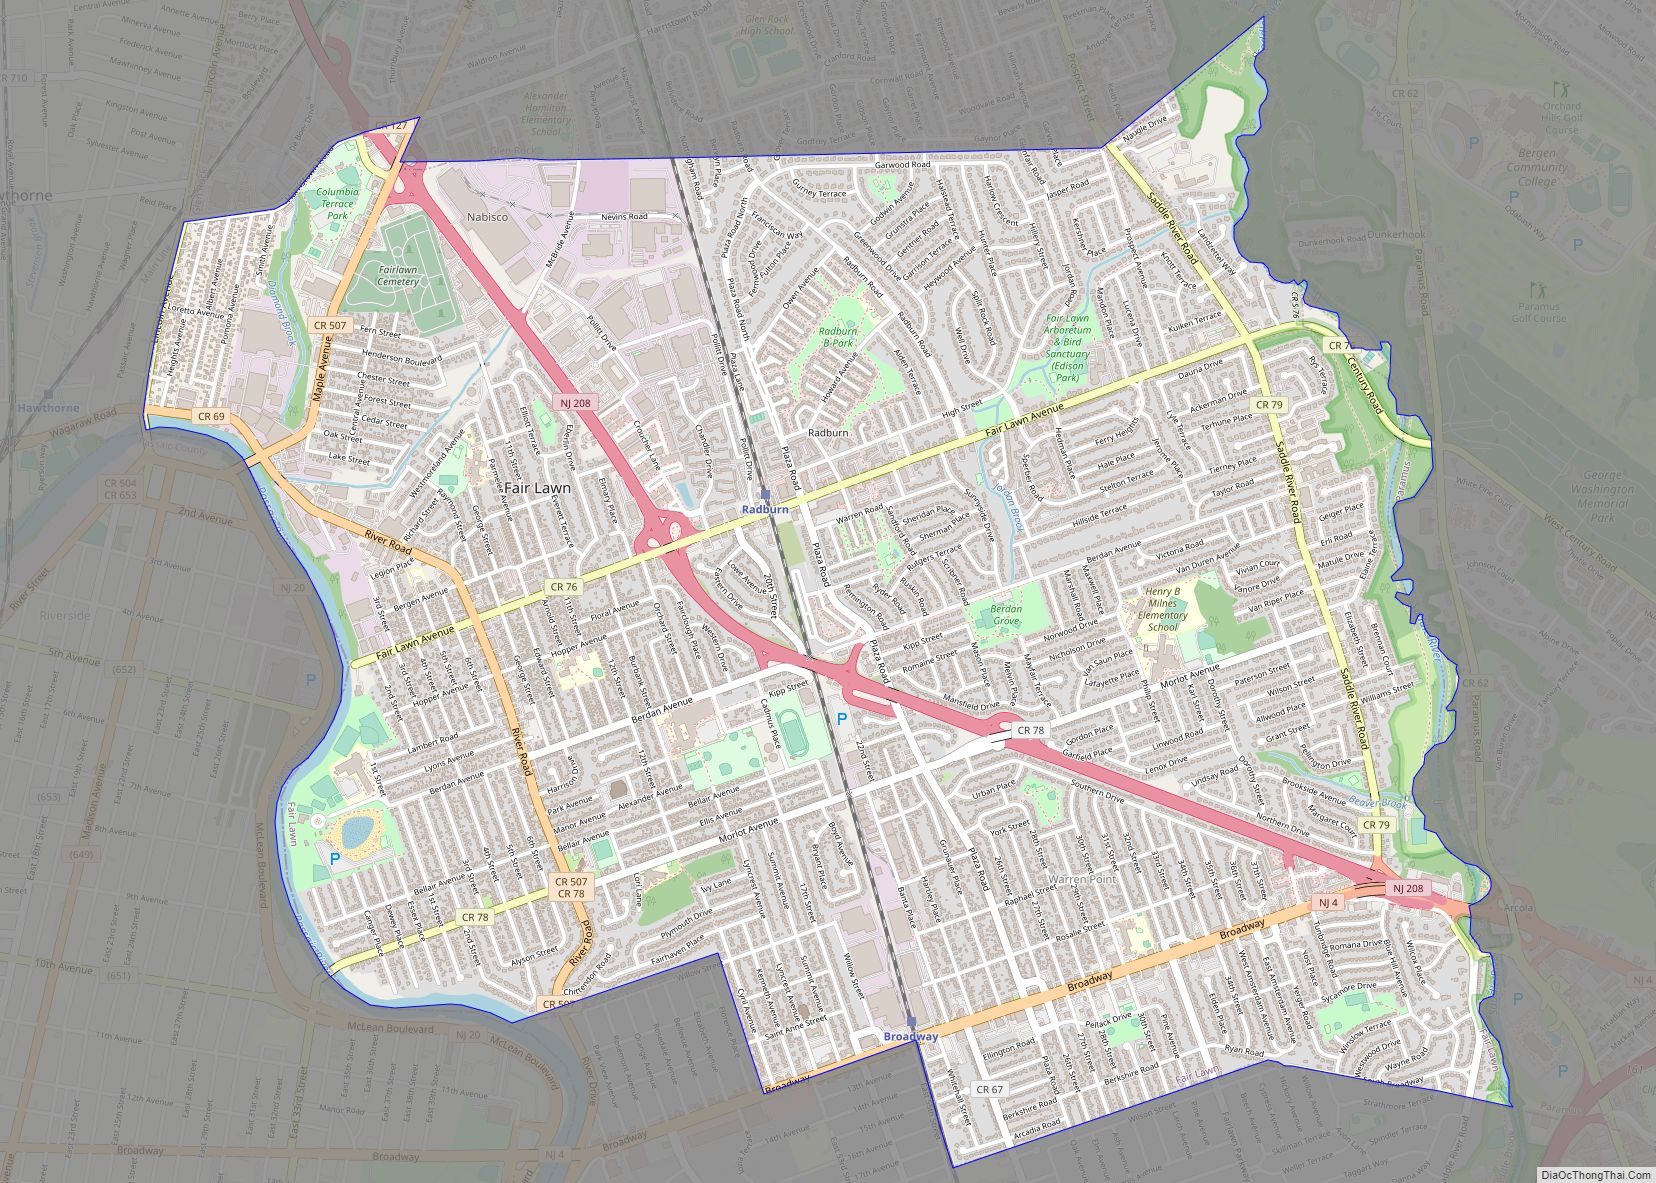 Map of Fair Lawn borough